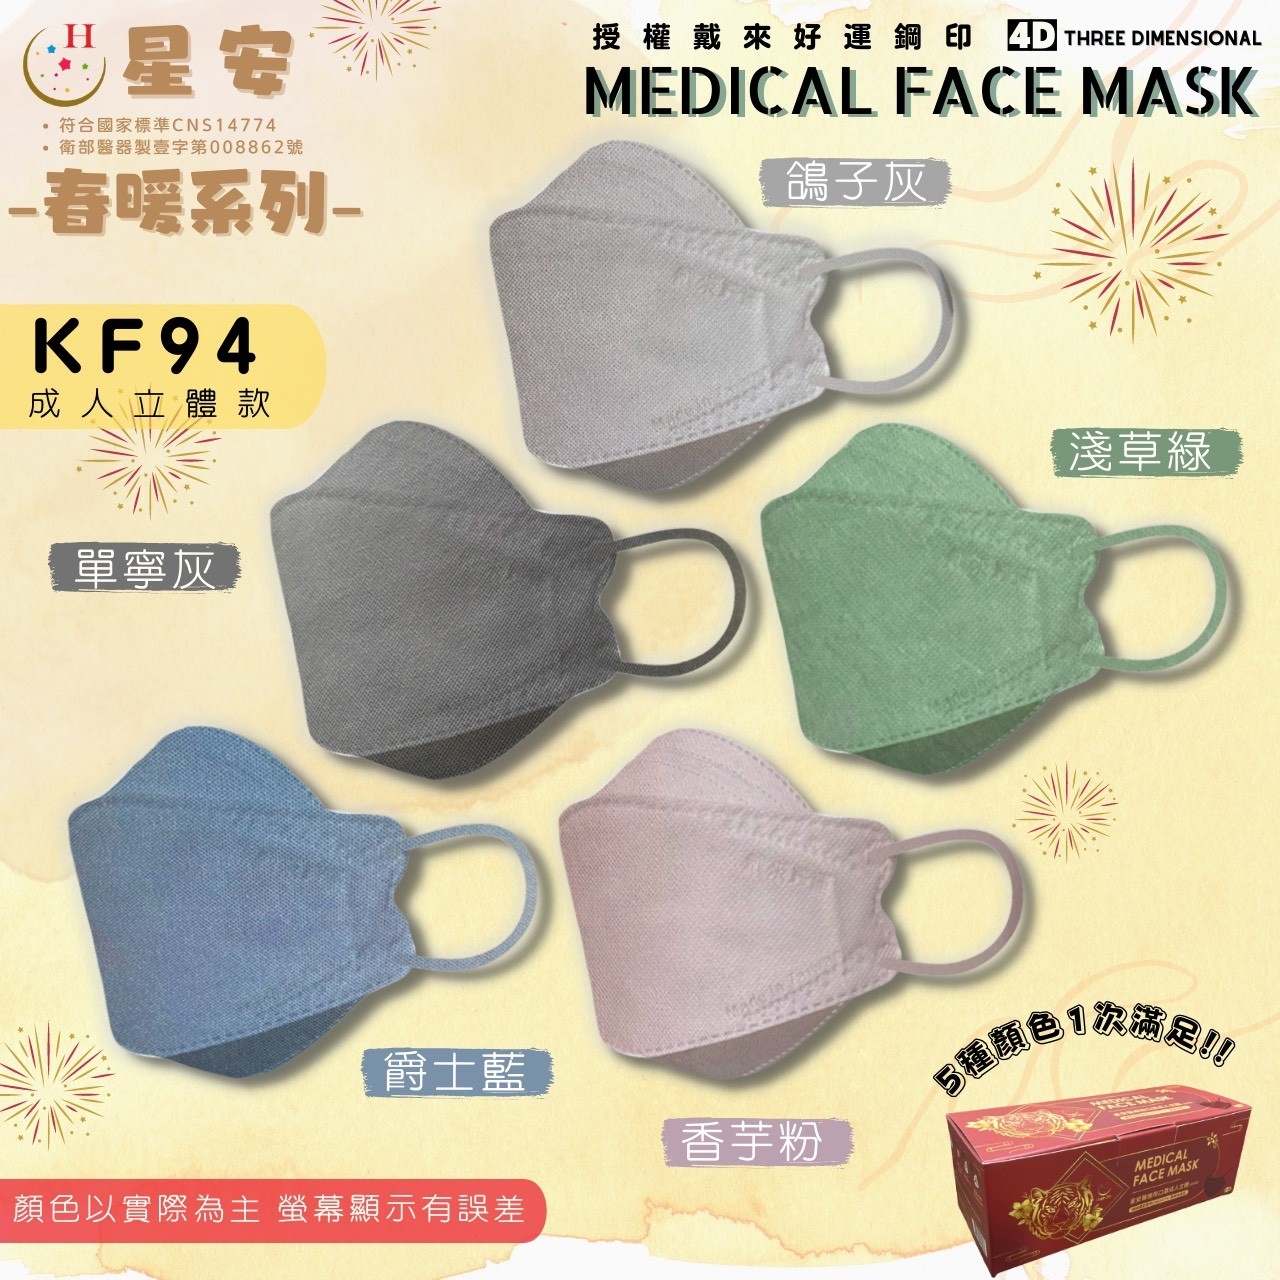 星安 KF94成人立體醫療口罩 25入/盒